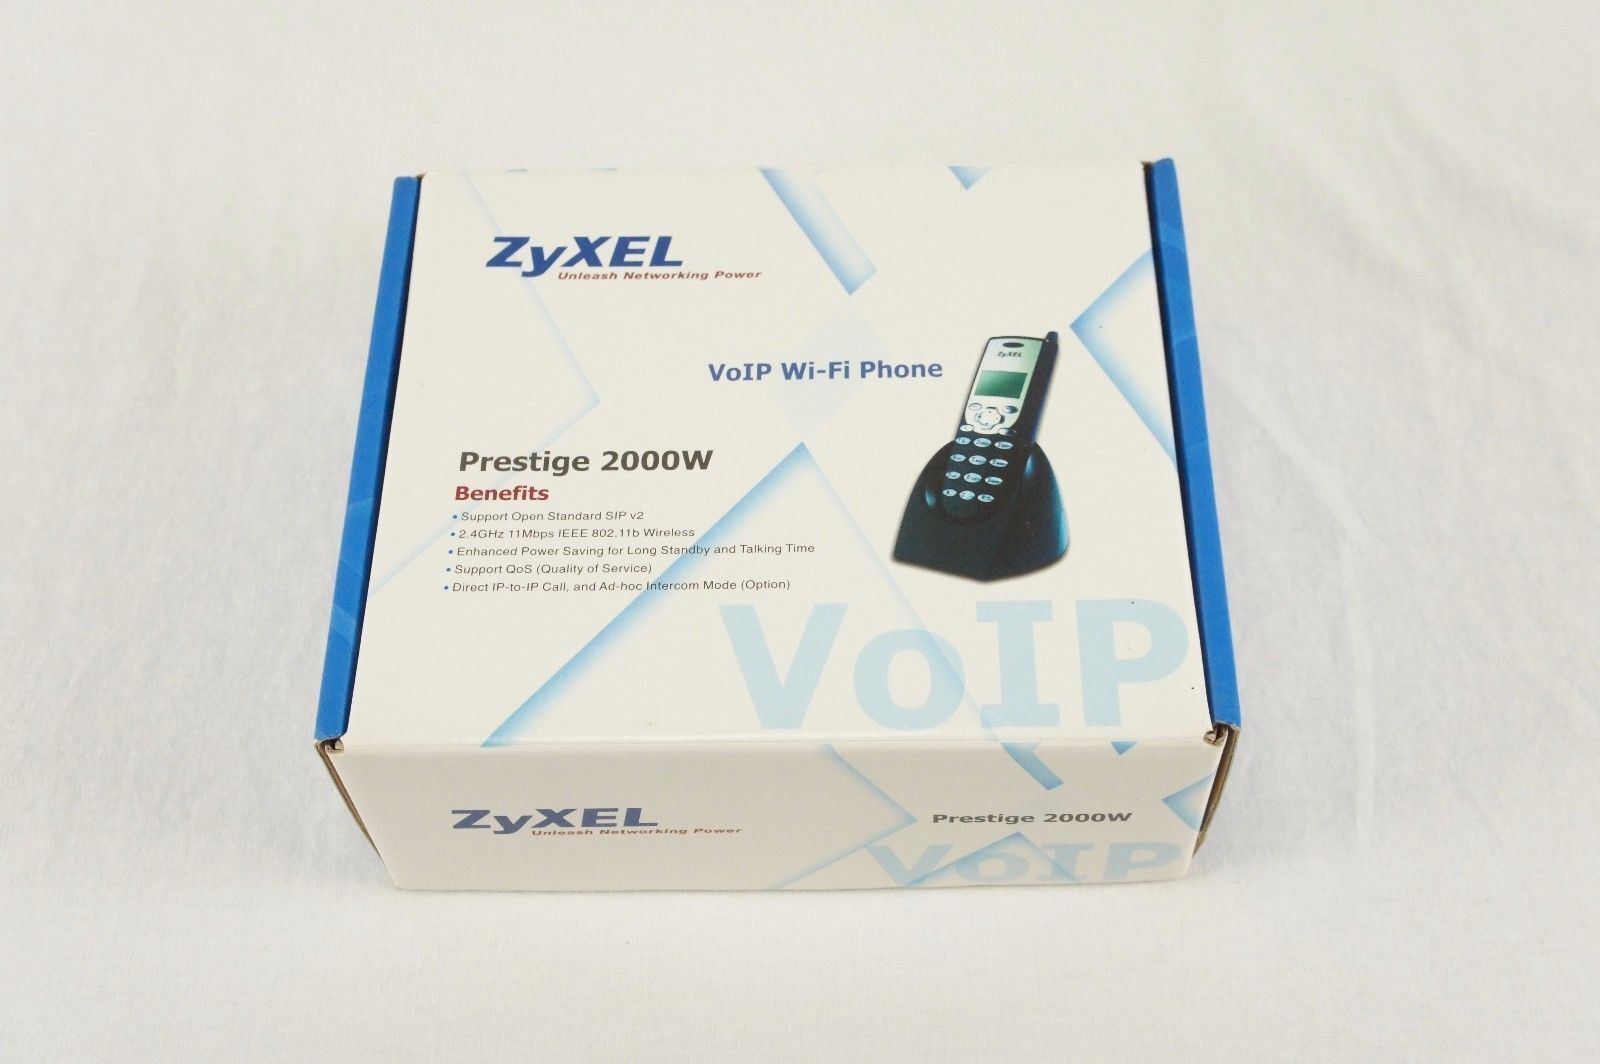 ZyXel Prestige 2000W VoIP Wi-Fi 2.4 GHz Cordless Phone